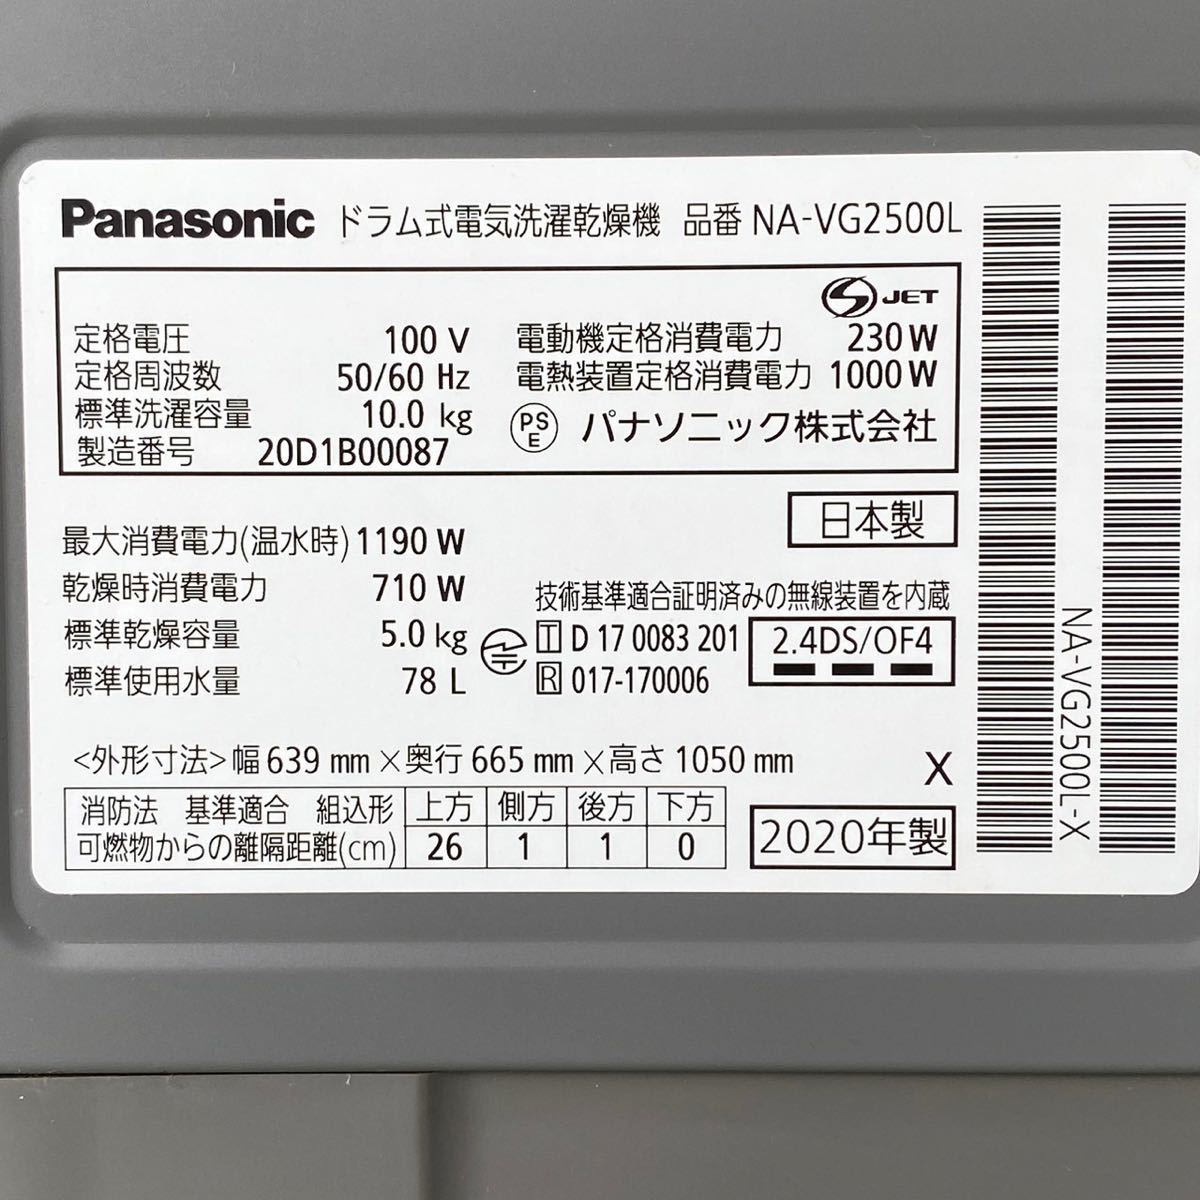 DBC1 прекрасный товар Panasonic Panasonic Cuble Cube ru стирка *. вода 10kg/ сухой 5kg... барабанного типа стиральная машина NA-VG2500L есть руководство пользователя .2020 год производства 